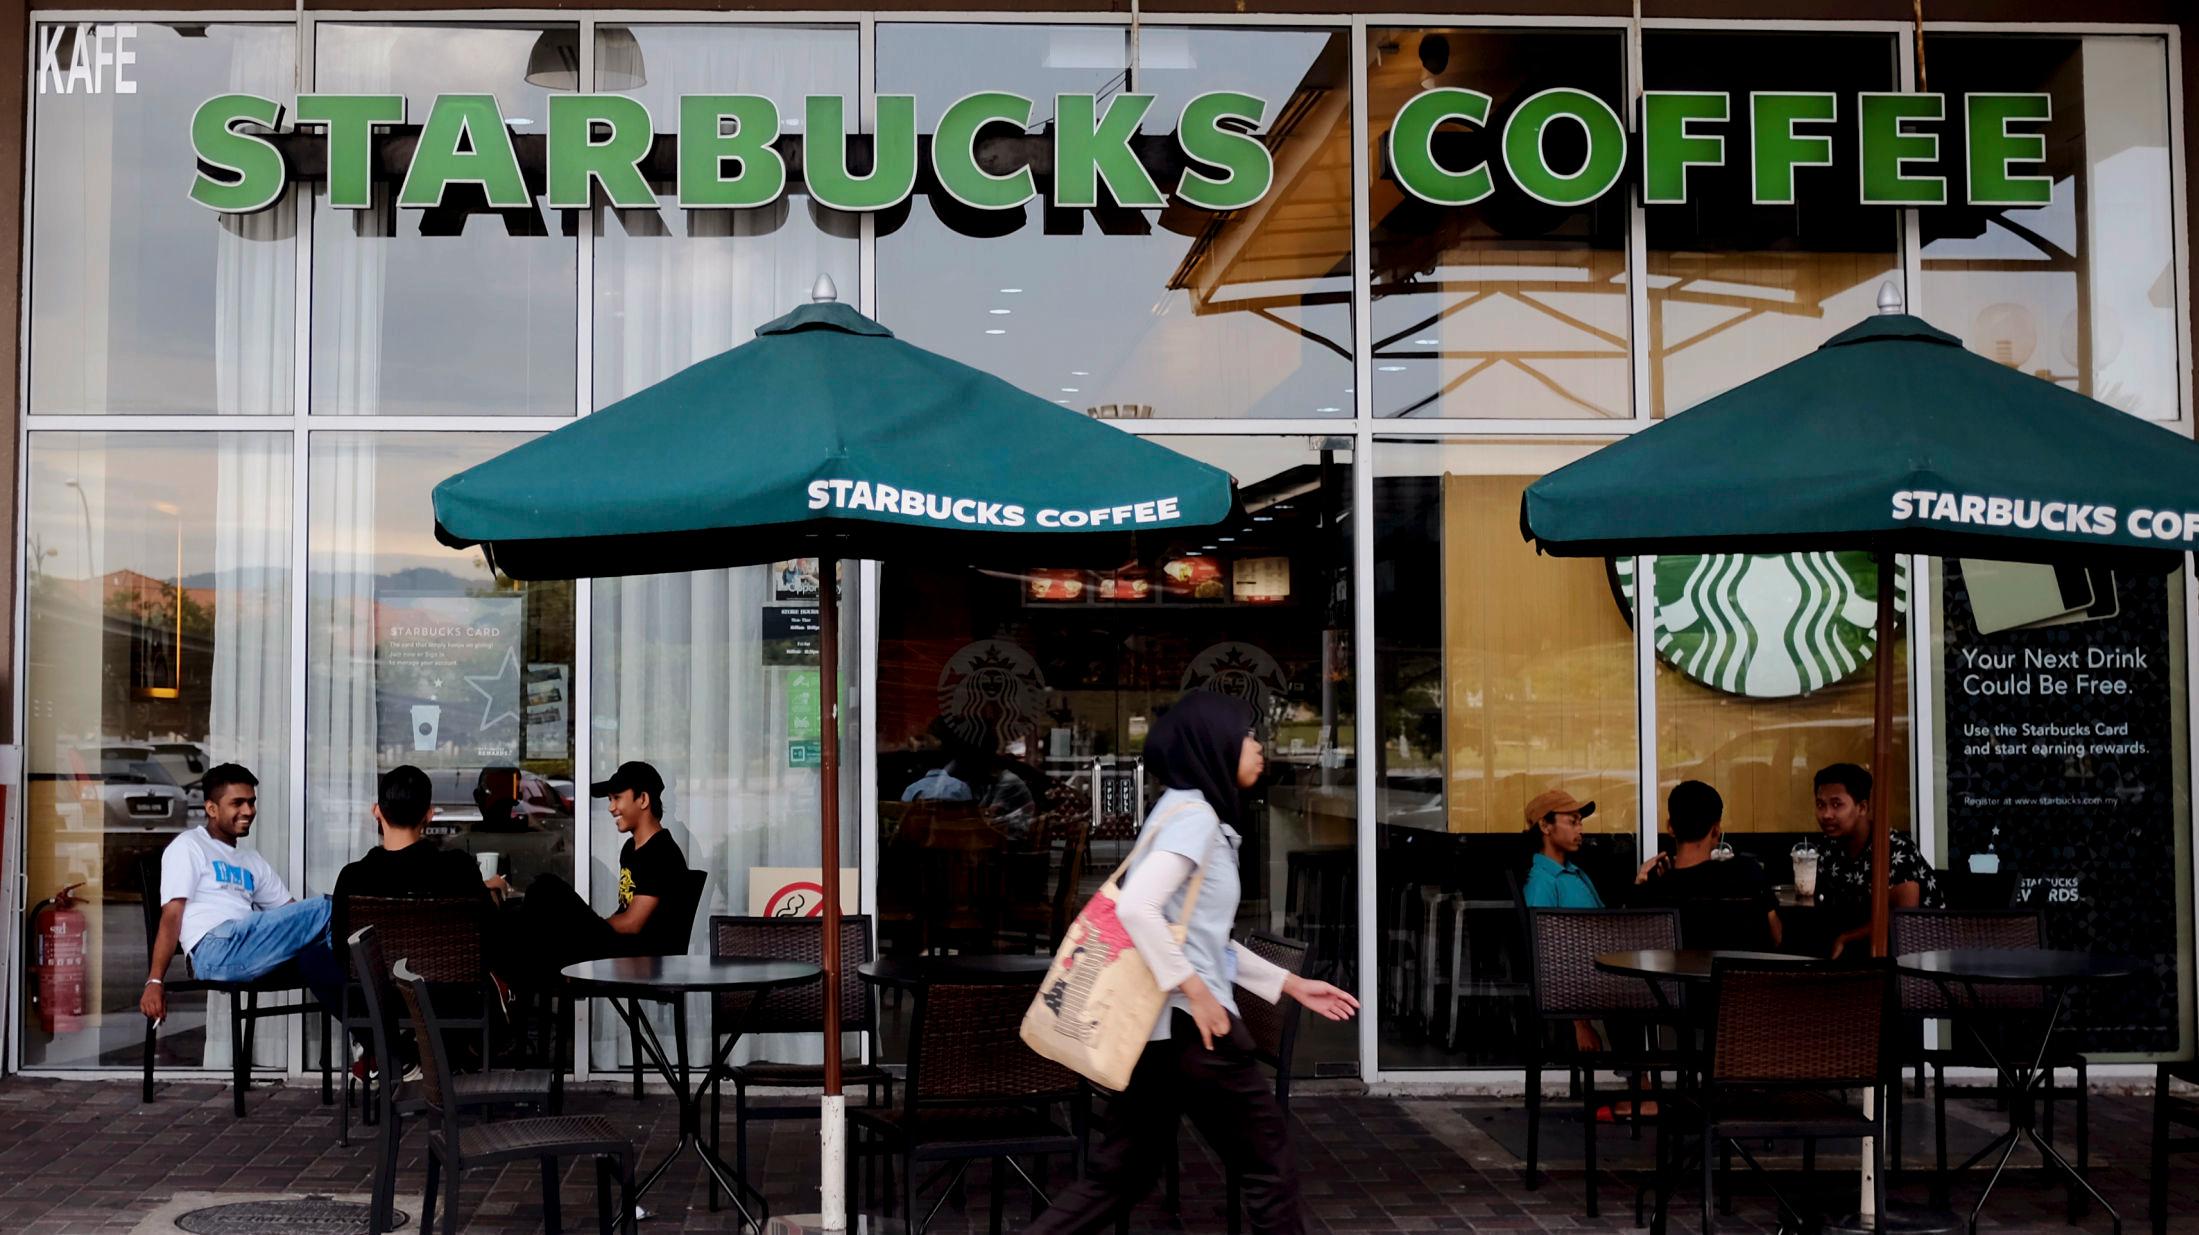 VERDENSKJENT: Starbucks er kjent over hele verden. Her får du vite ting du kanskje ikke visste fra før om den berømte kaffesjappa. Foto: Daniel Chan/AP